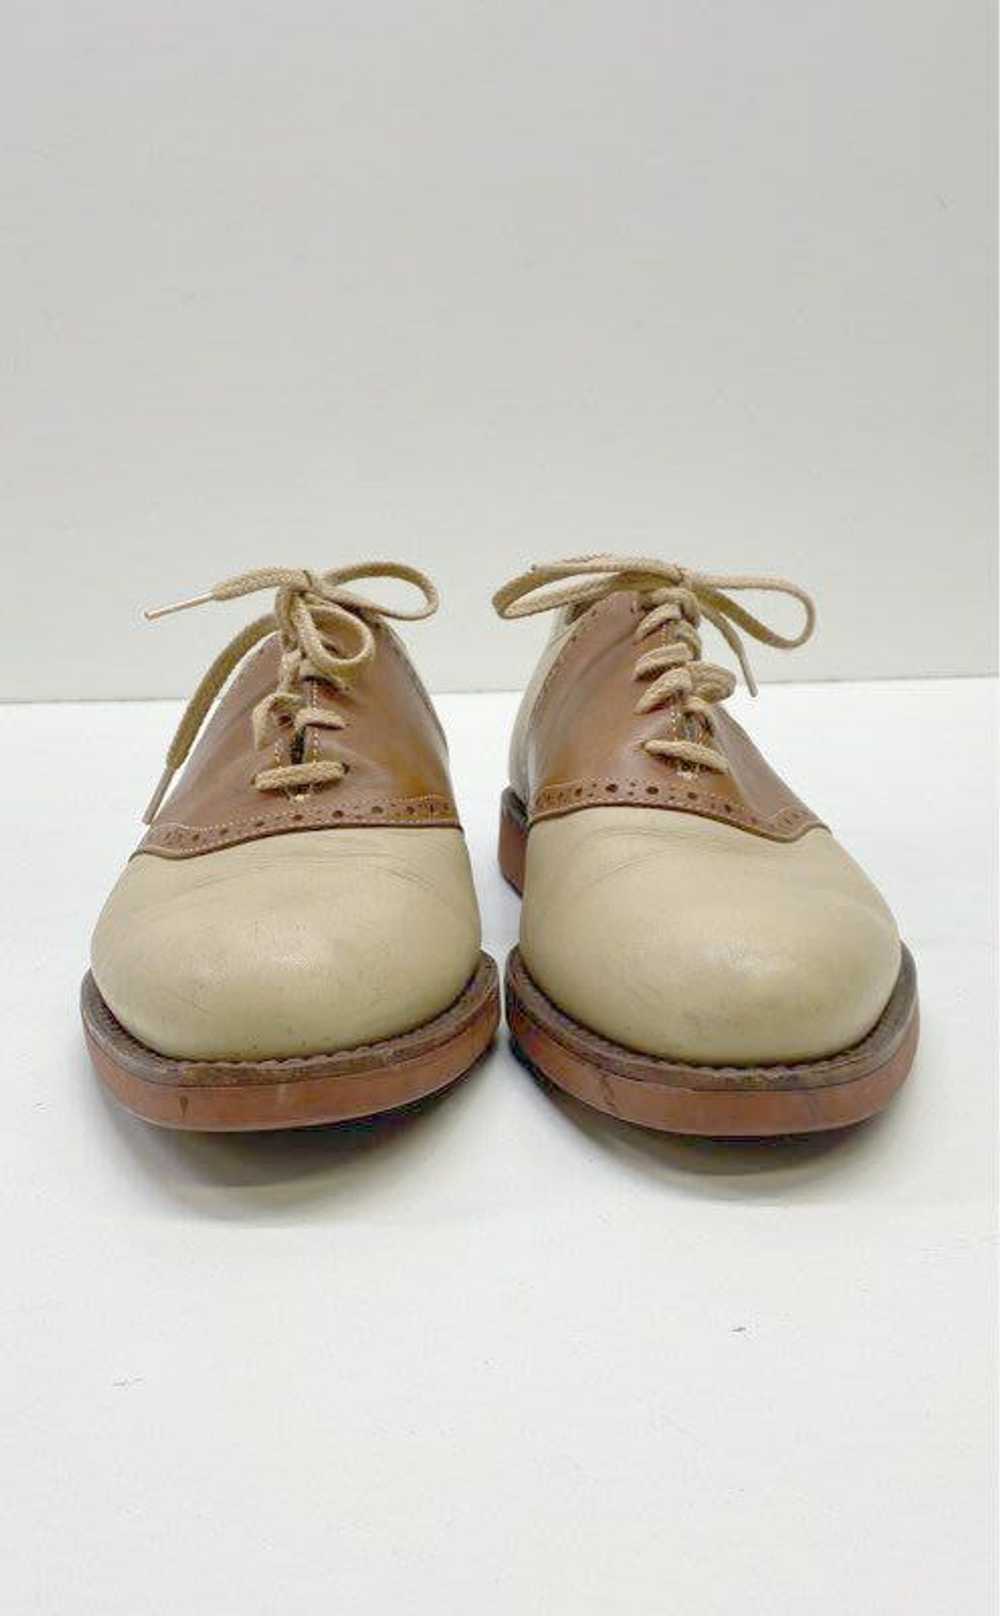 Cole Haan Men's Brown/Tan Saddle Shoes Sz. 8.5 - image 3